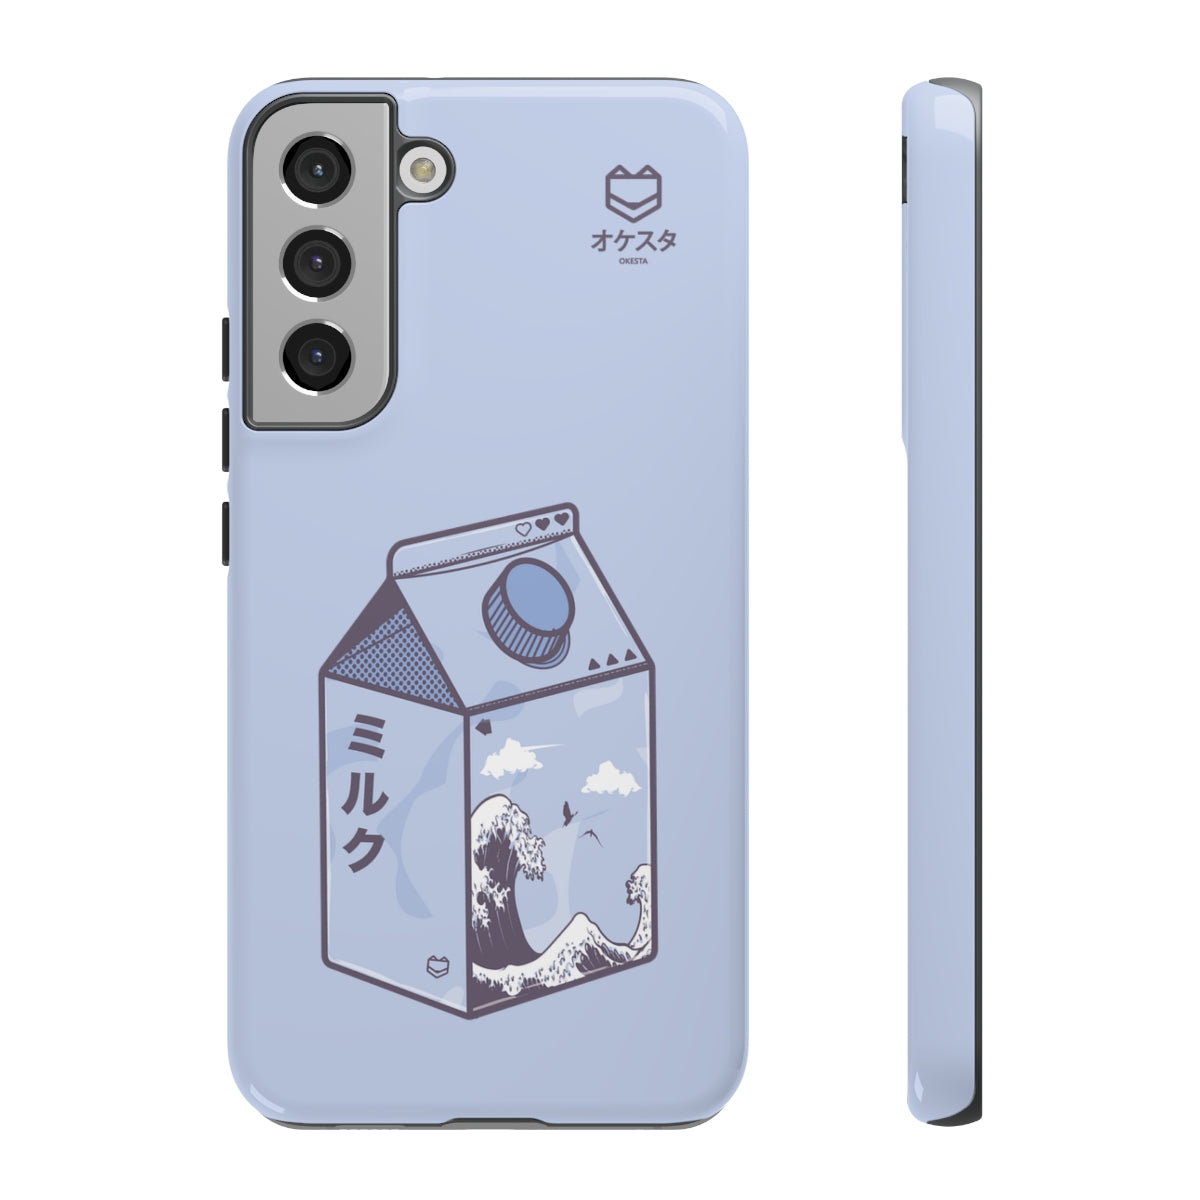 Kanagawa Carton Samsung Case